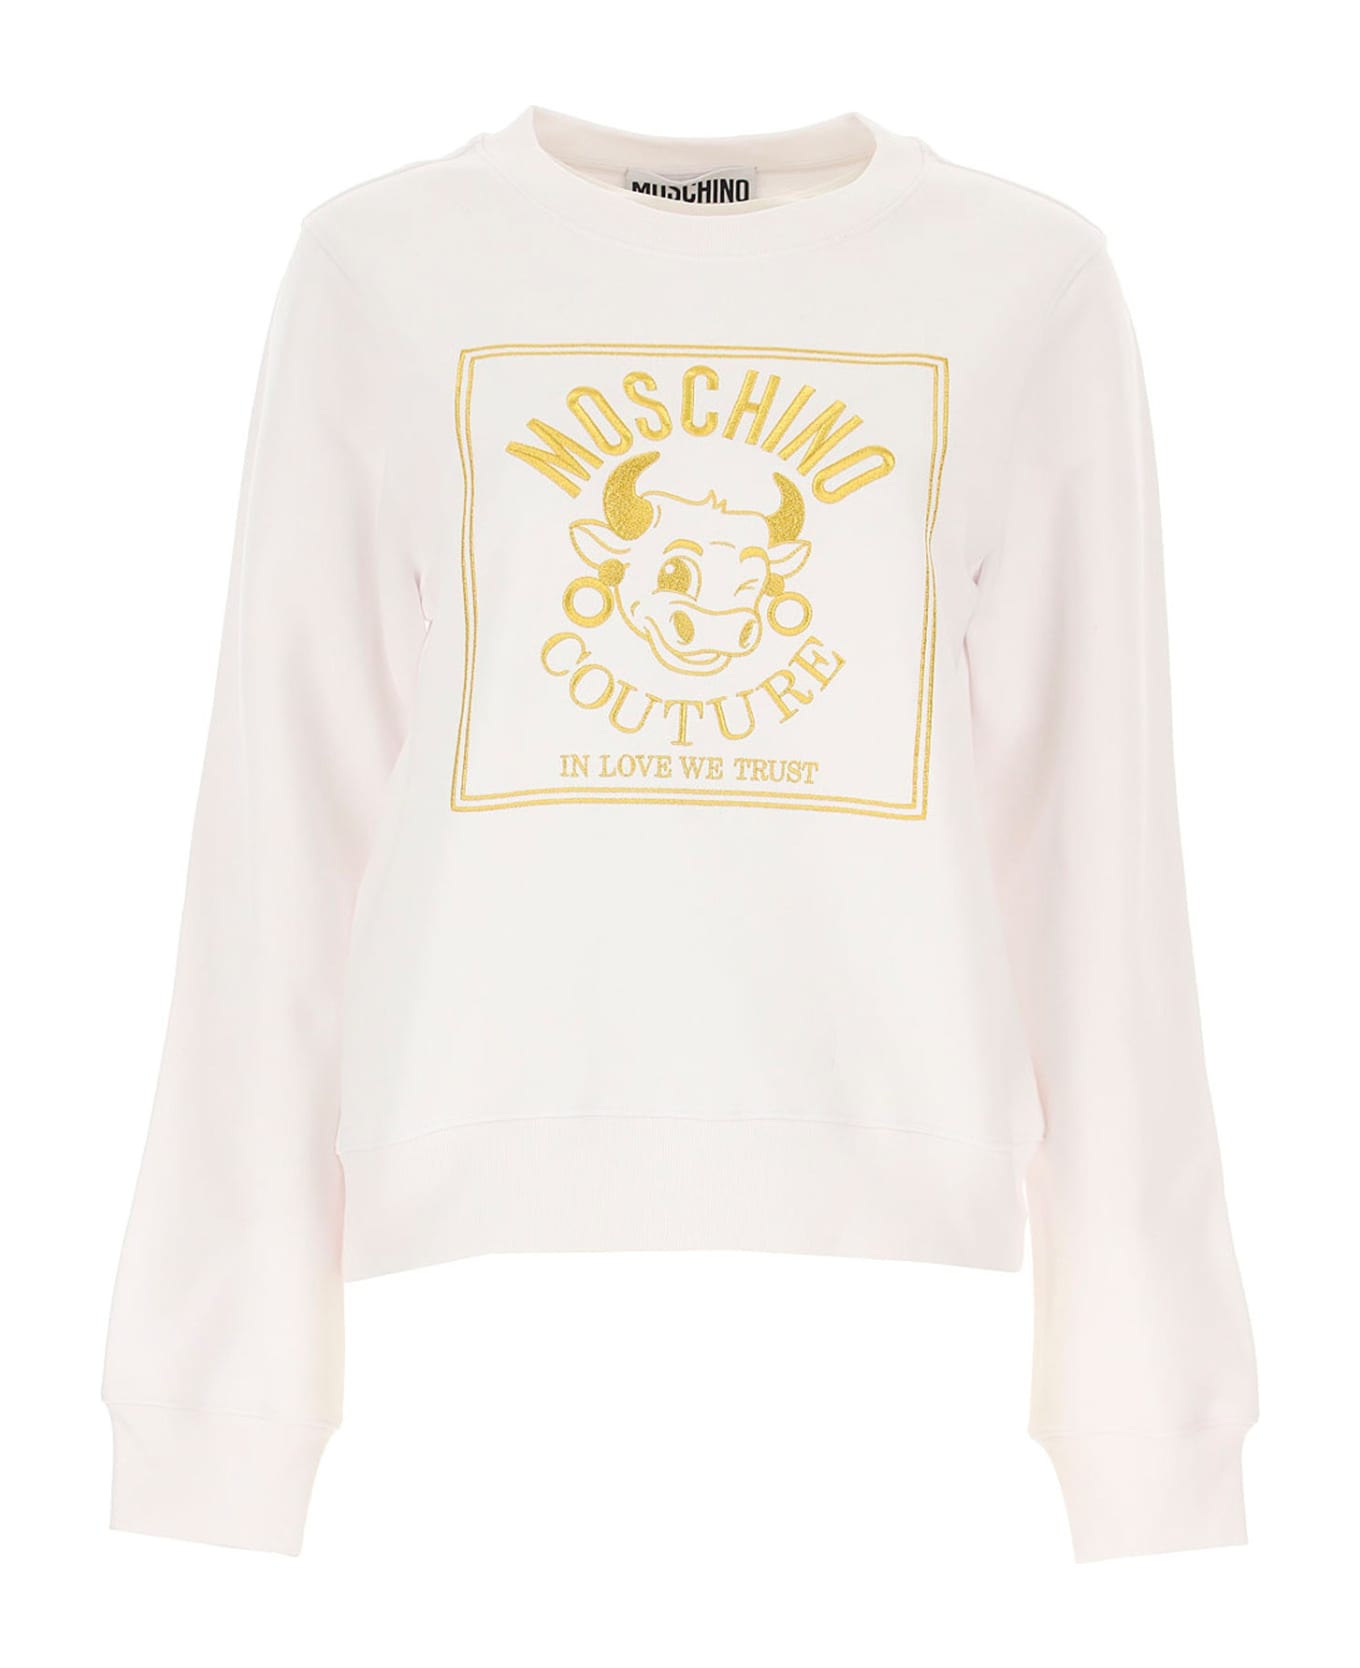 Moschino Couture Logo Sweartshirt - White